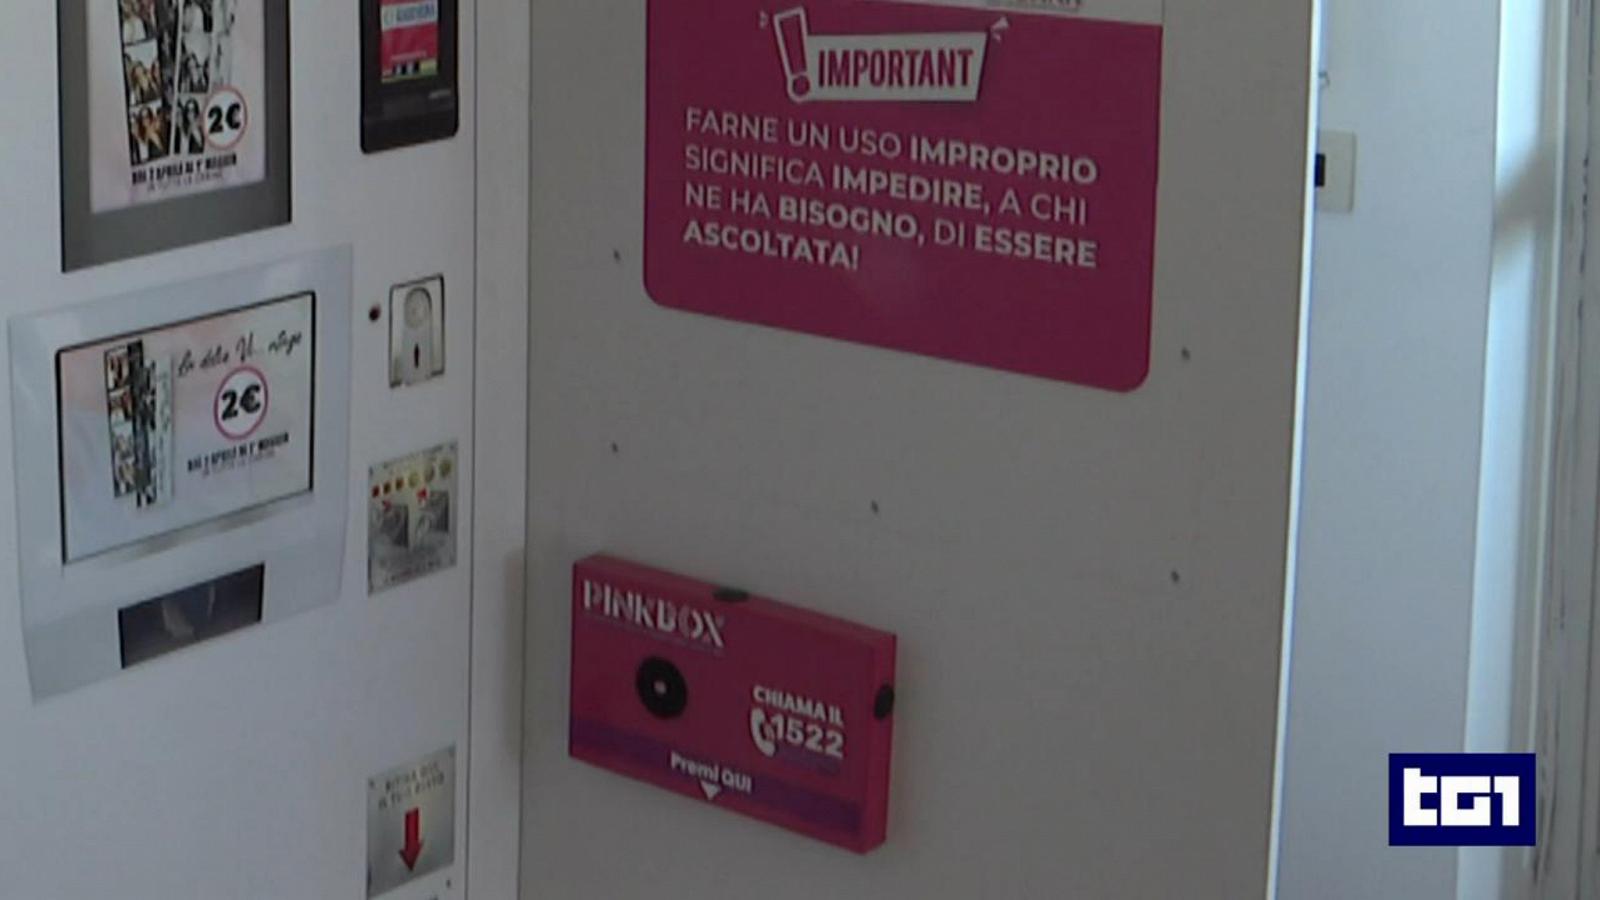 Pinkbox, premere un pulsante in una cabina fototessera per ottenere aiuto immediato